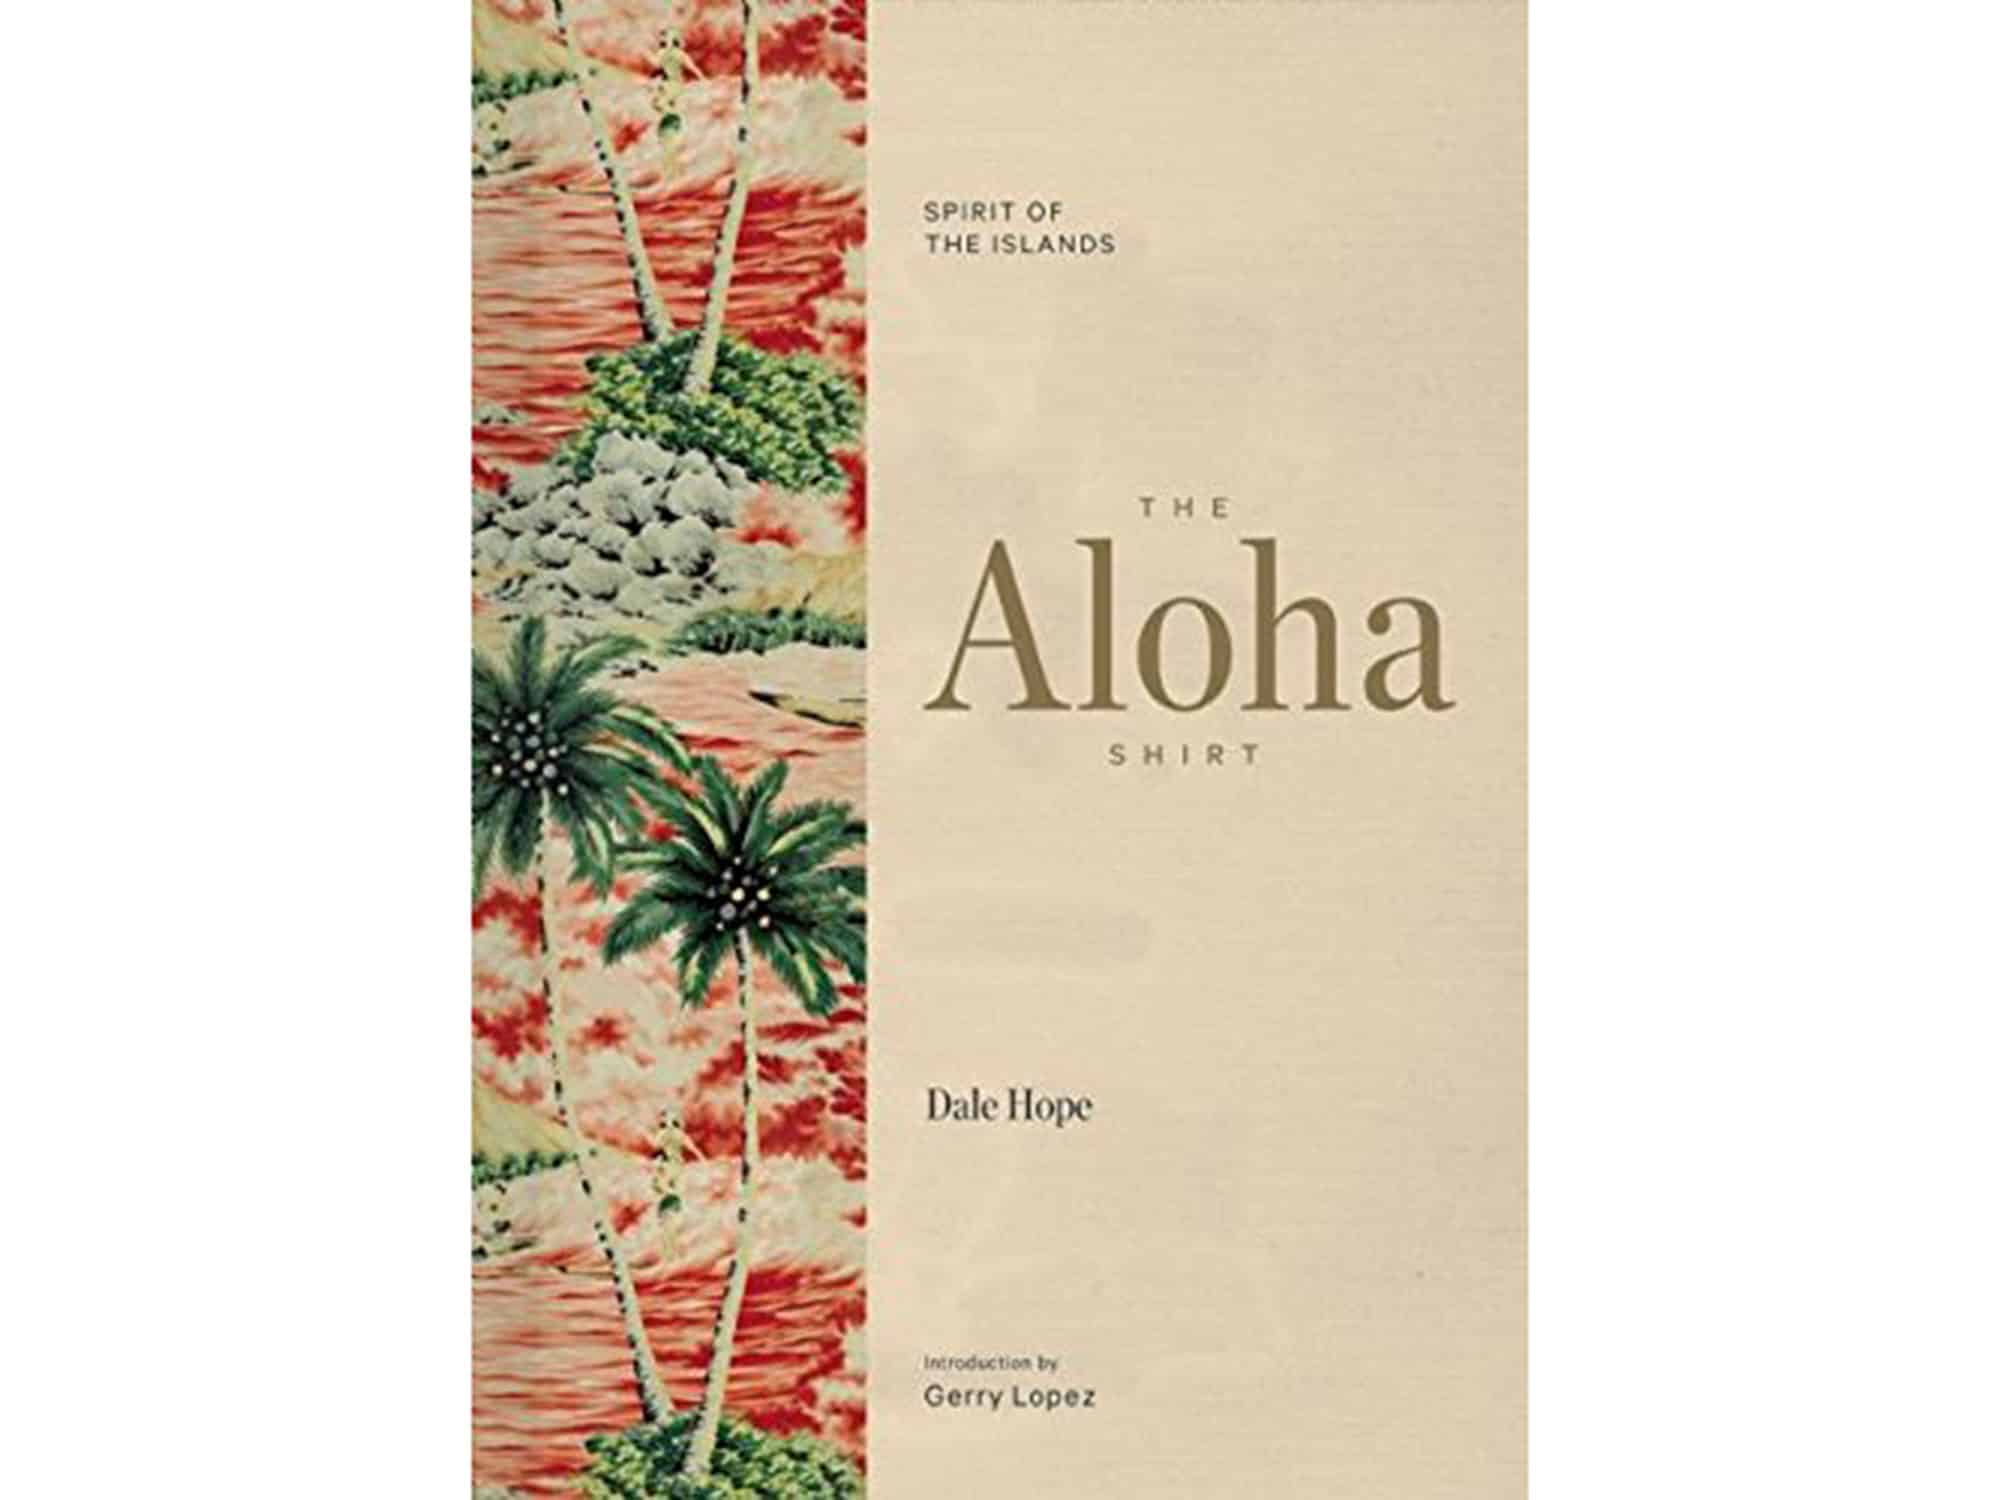 Hawaii book